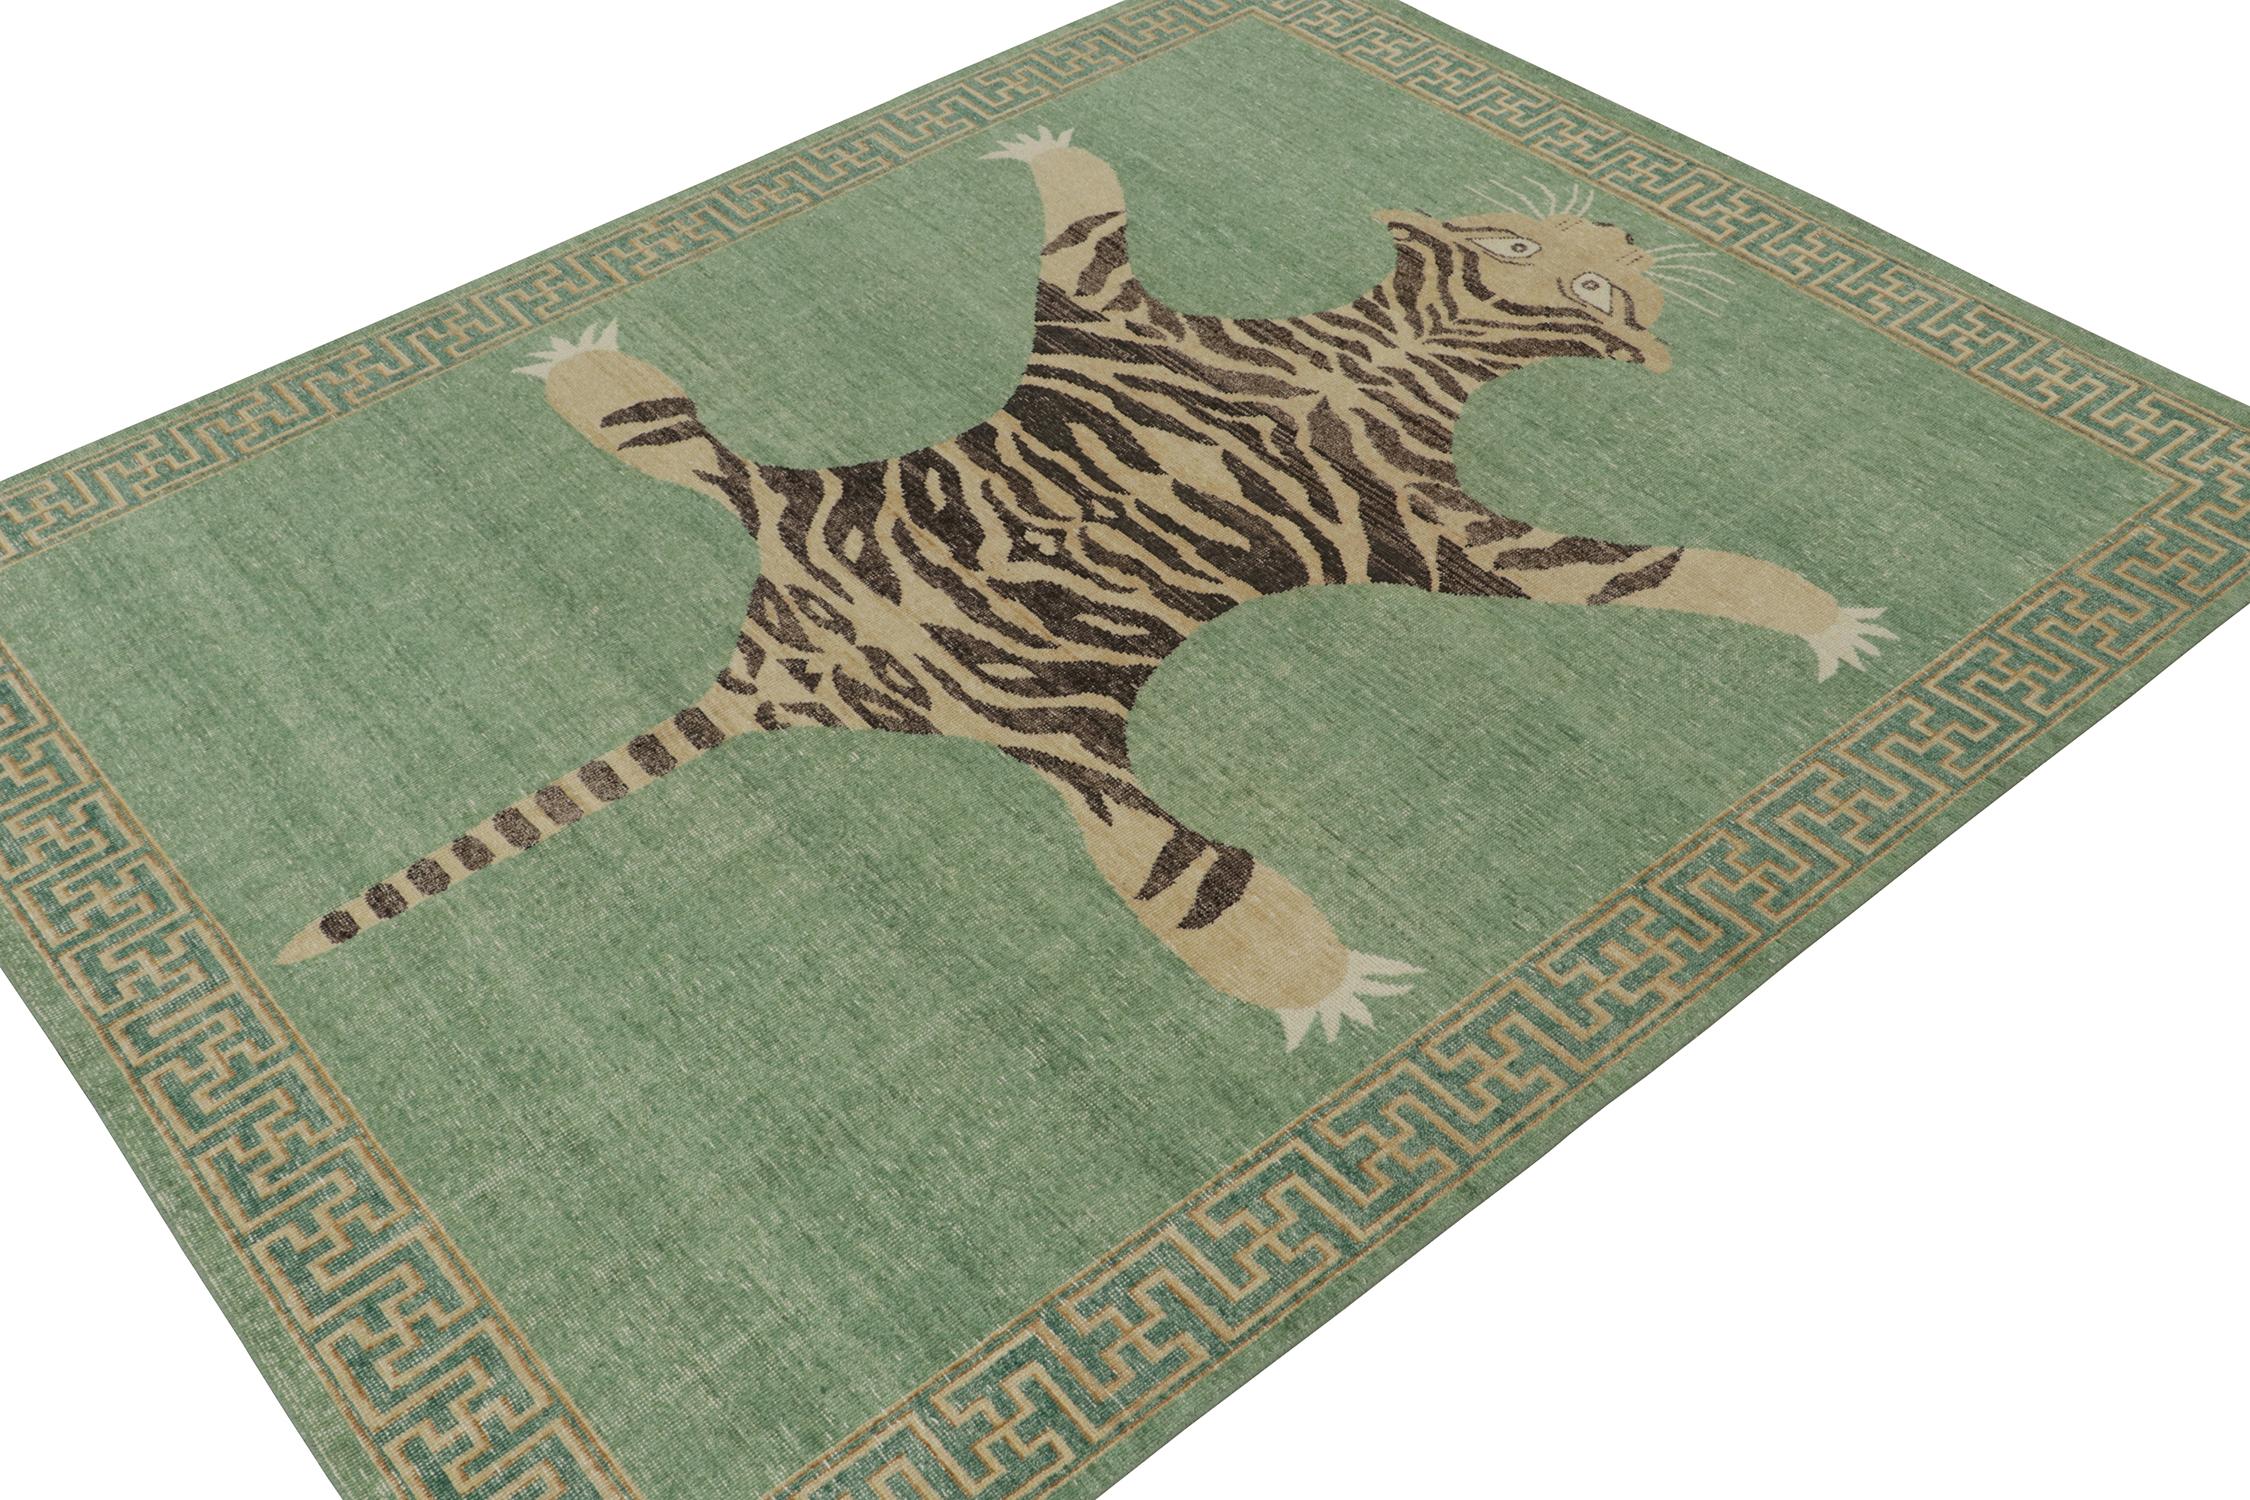 Ce tapis 8x10 est un nouvel ajout à la Collection Homage de Rug & Kilim, qui reprend le design ancestral du tapis en peau de tigre.

Plus loin dans le Design : 

Cette pièce est inspirée des anciens tapis indiens en peau de tigre, dont la